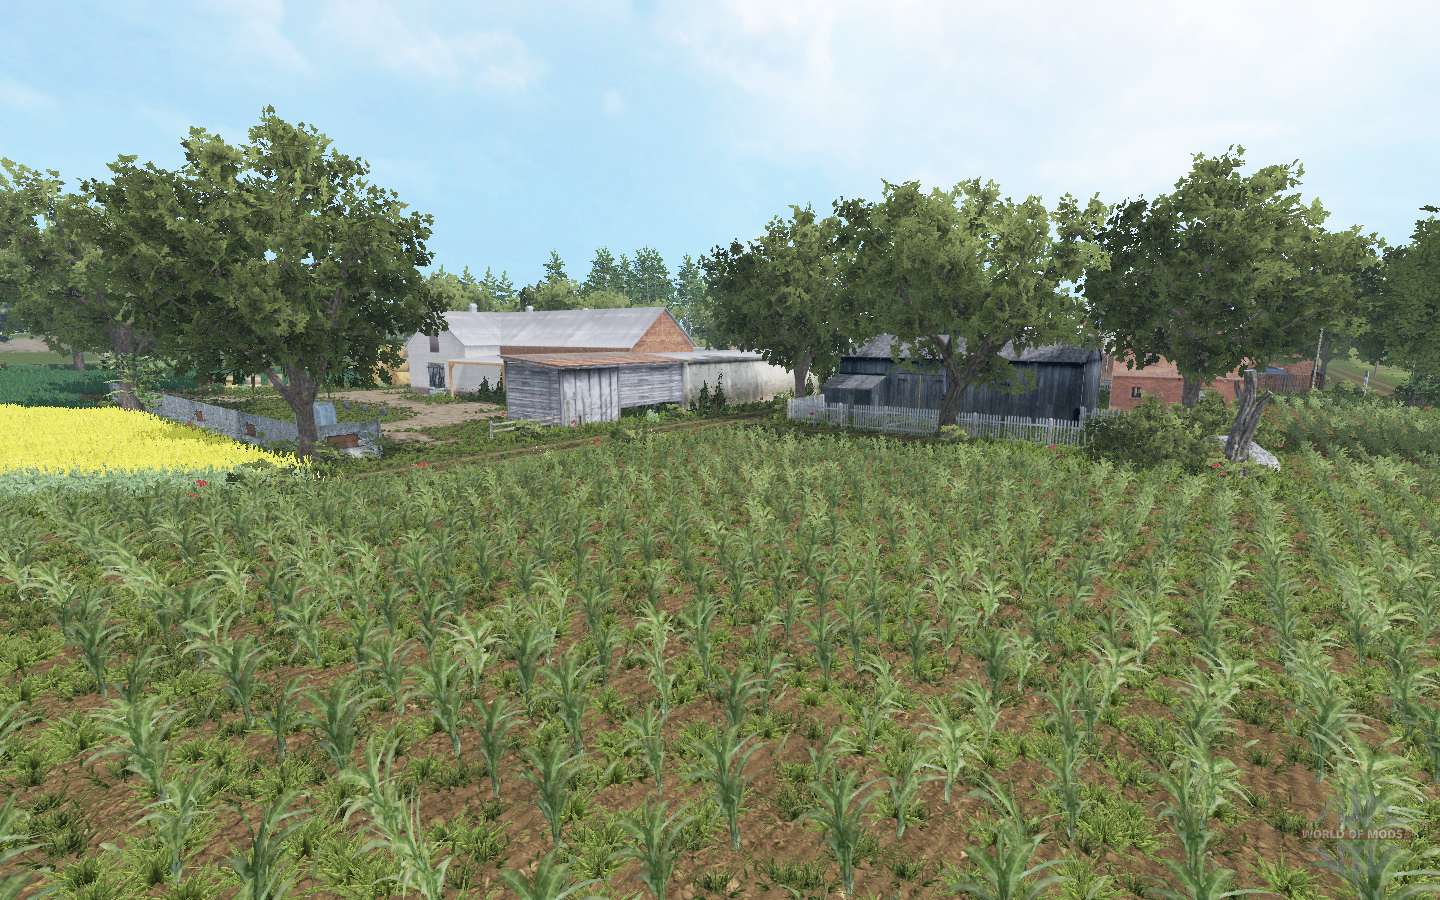 Bolusowo V60 Para Farming Simulator 2015 1090